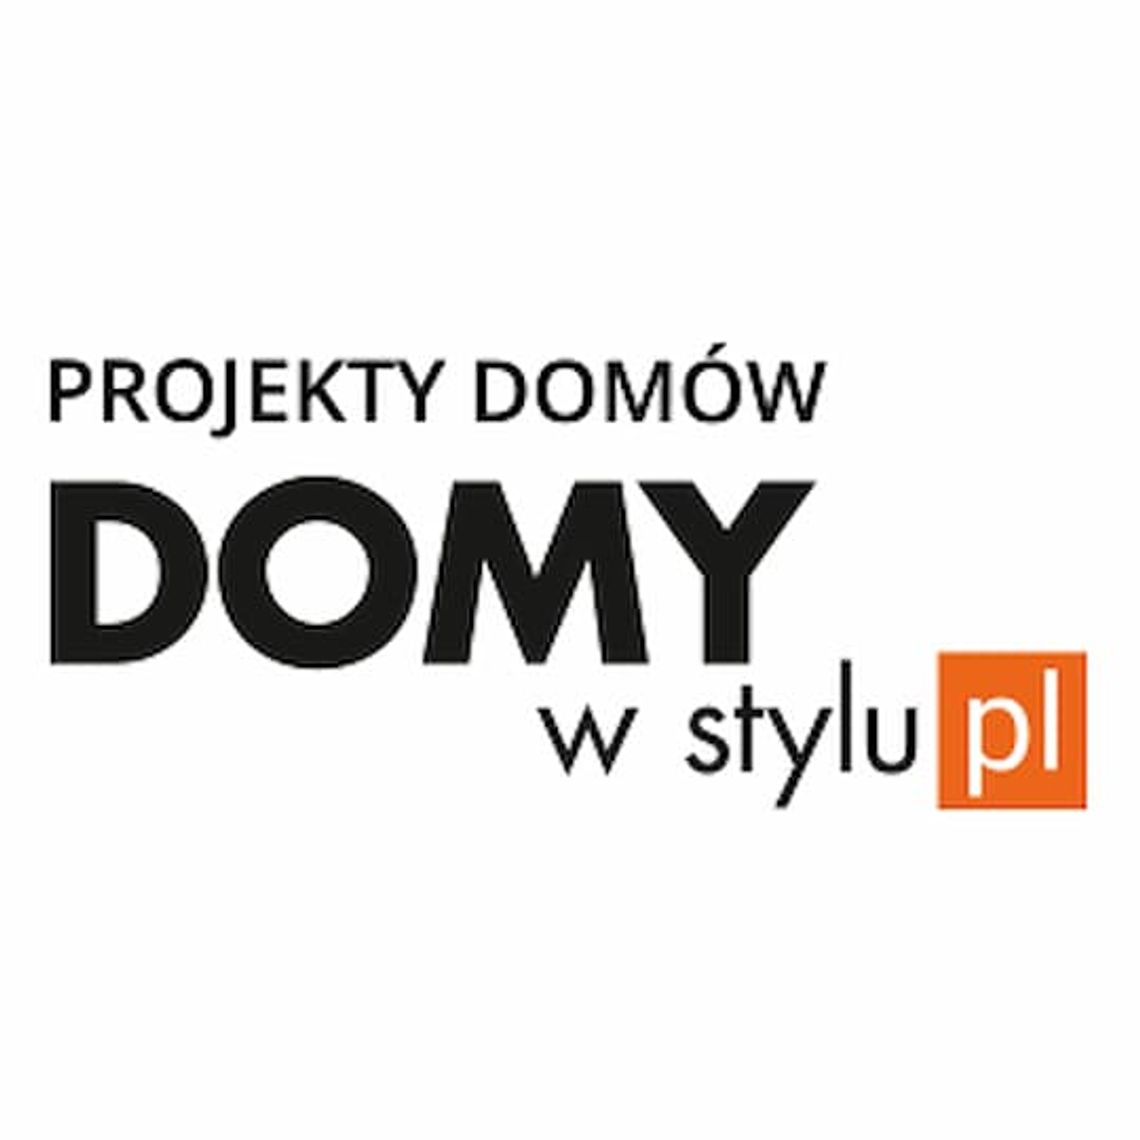 DomywStylu.pl - projekty domów